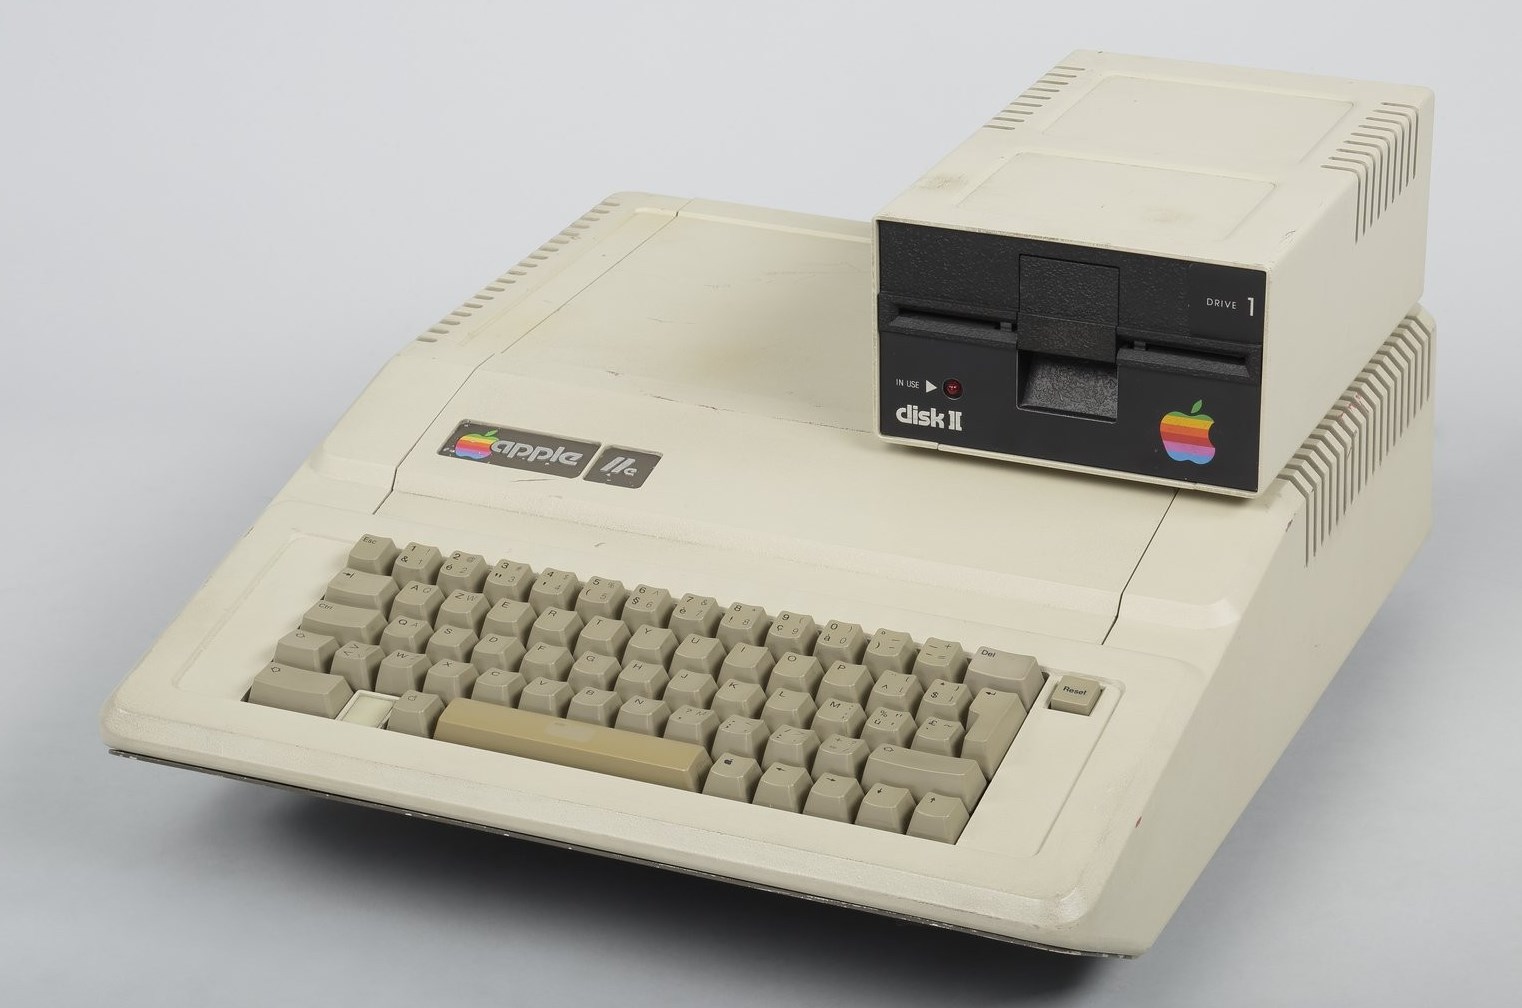 Accéder à la page "Apple IIe"